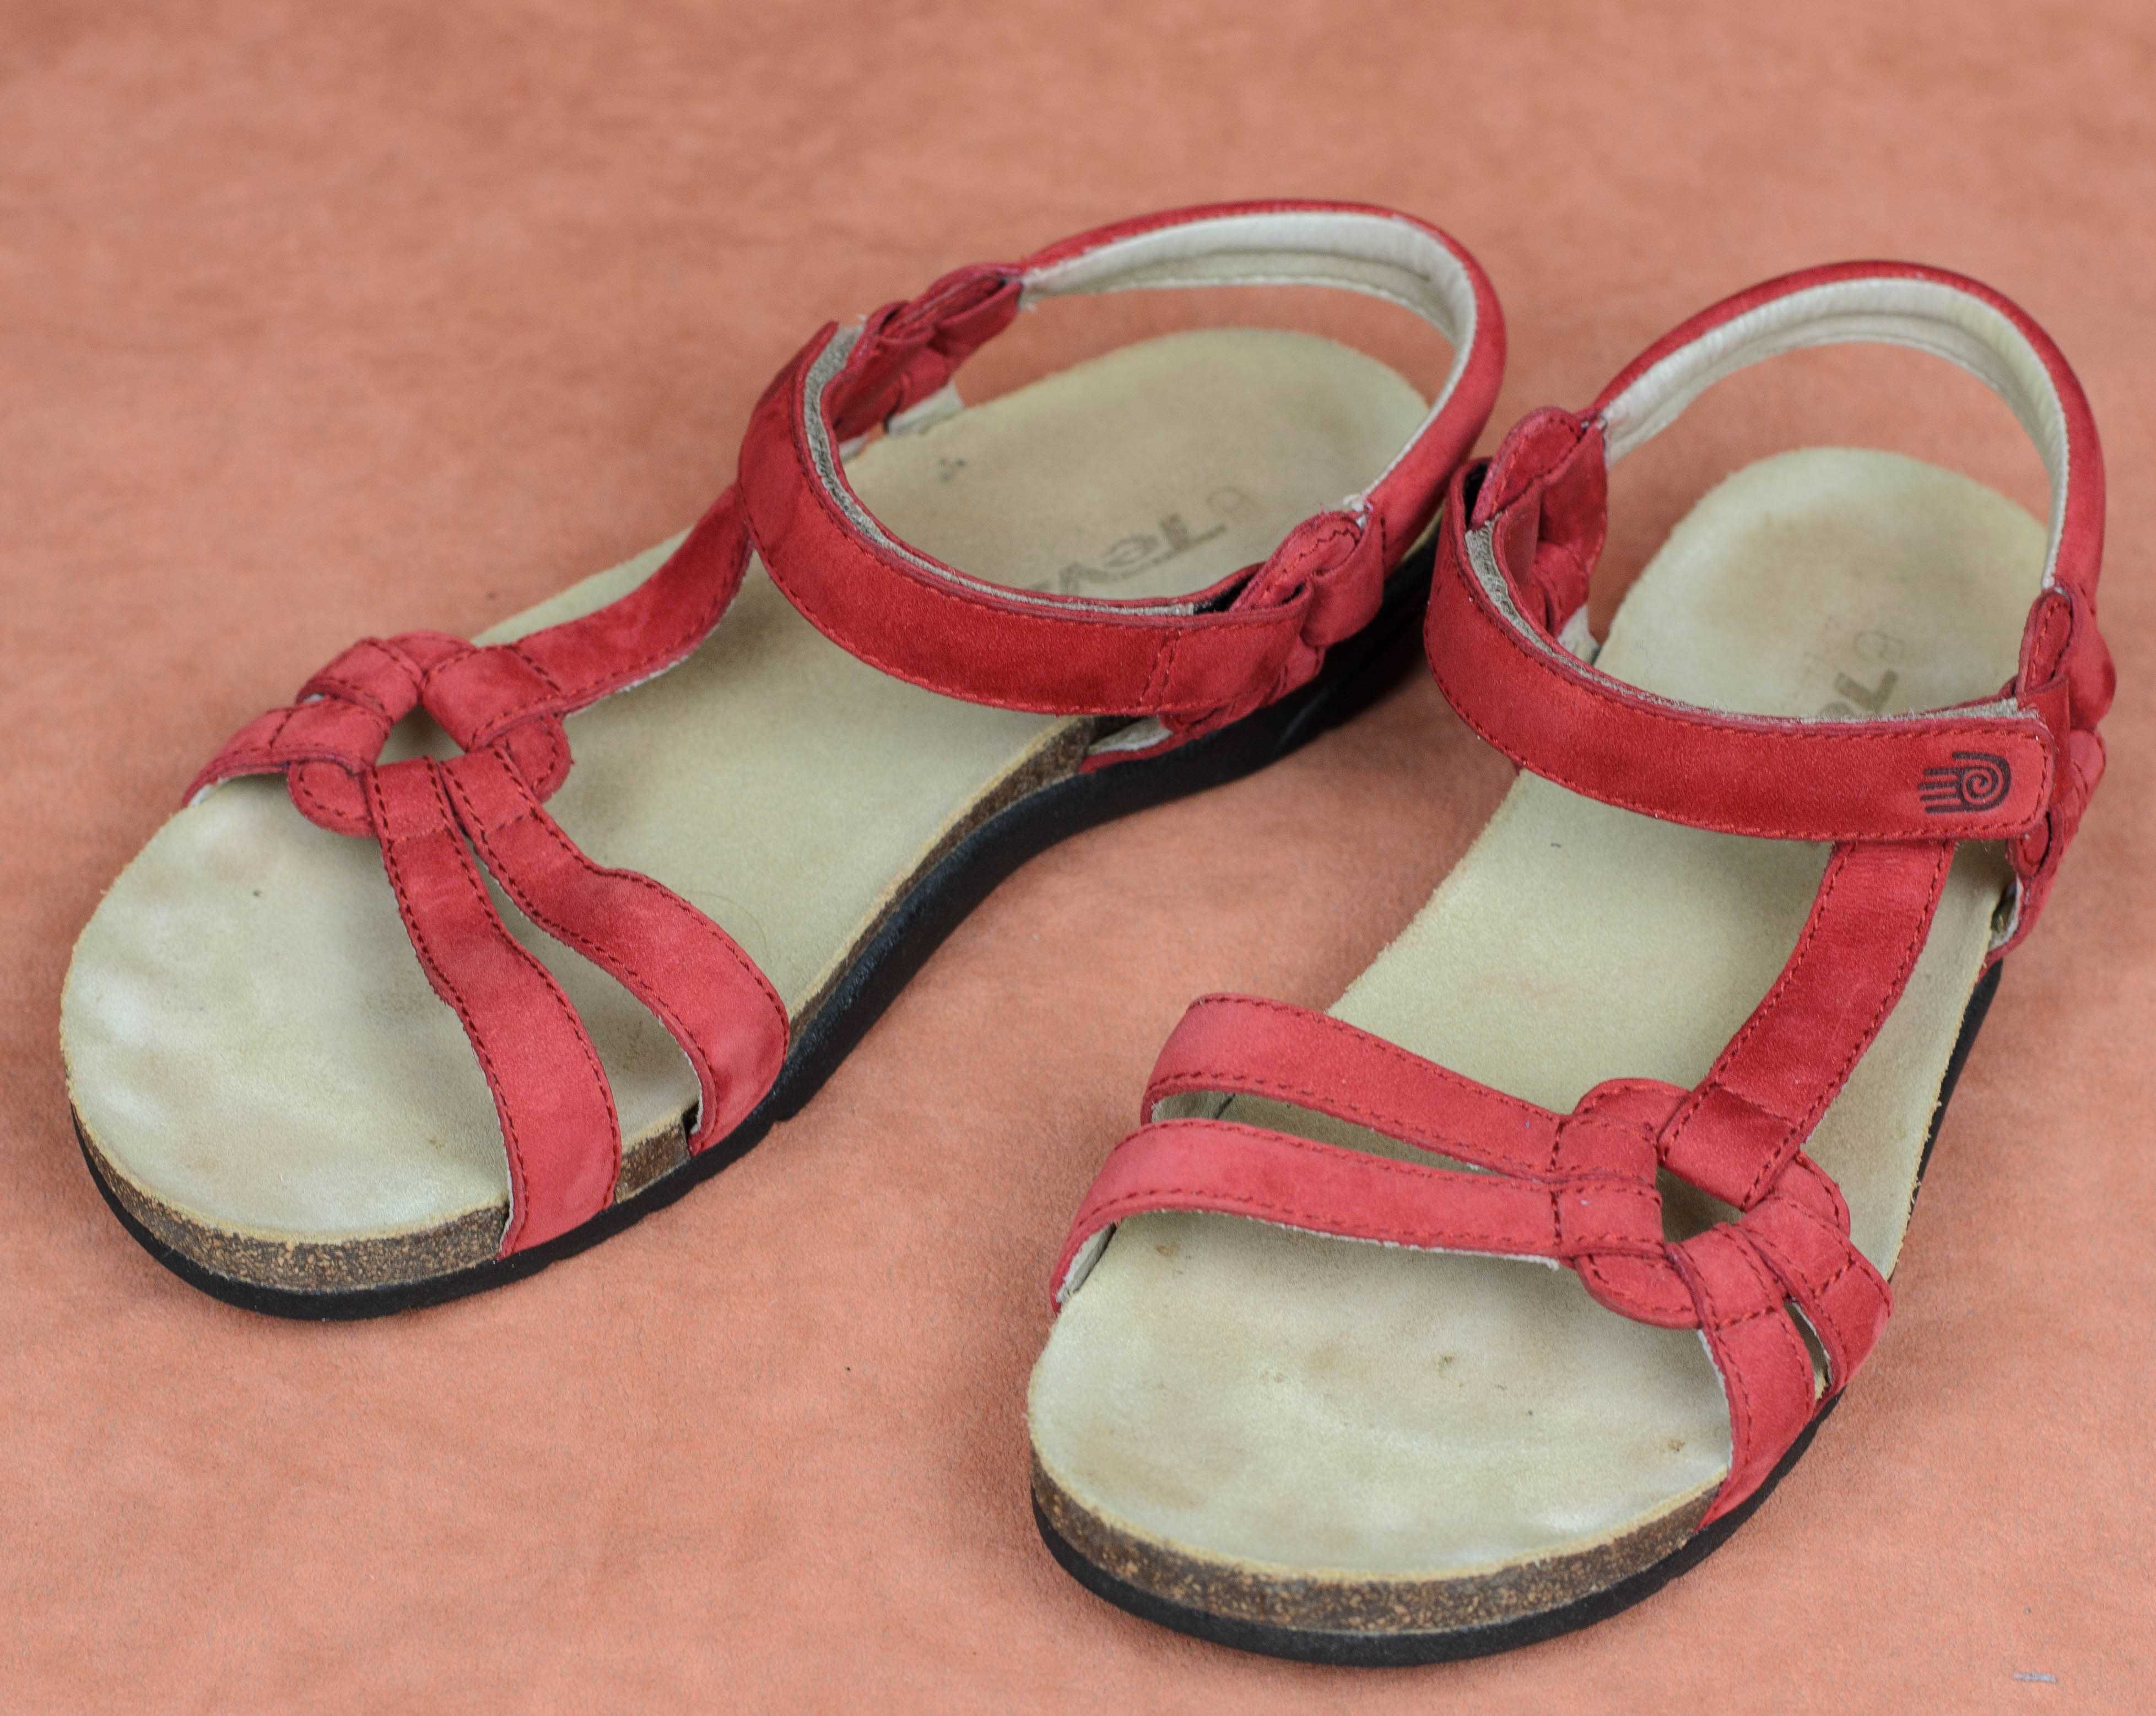 Кожаные сандалии босоножки Teva 6389 ventura cork Оригинал 37р 23,5 см